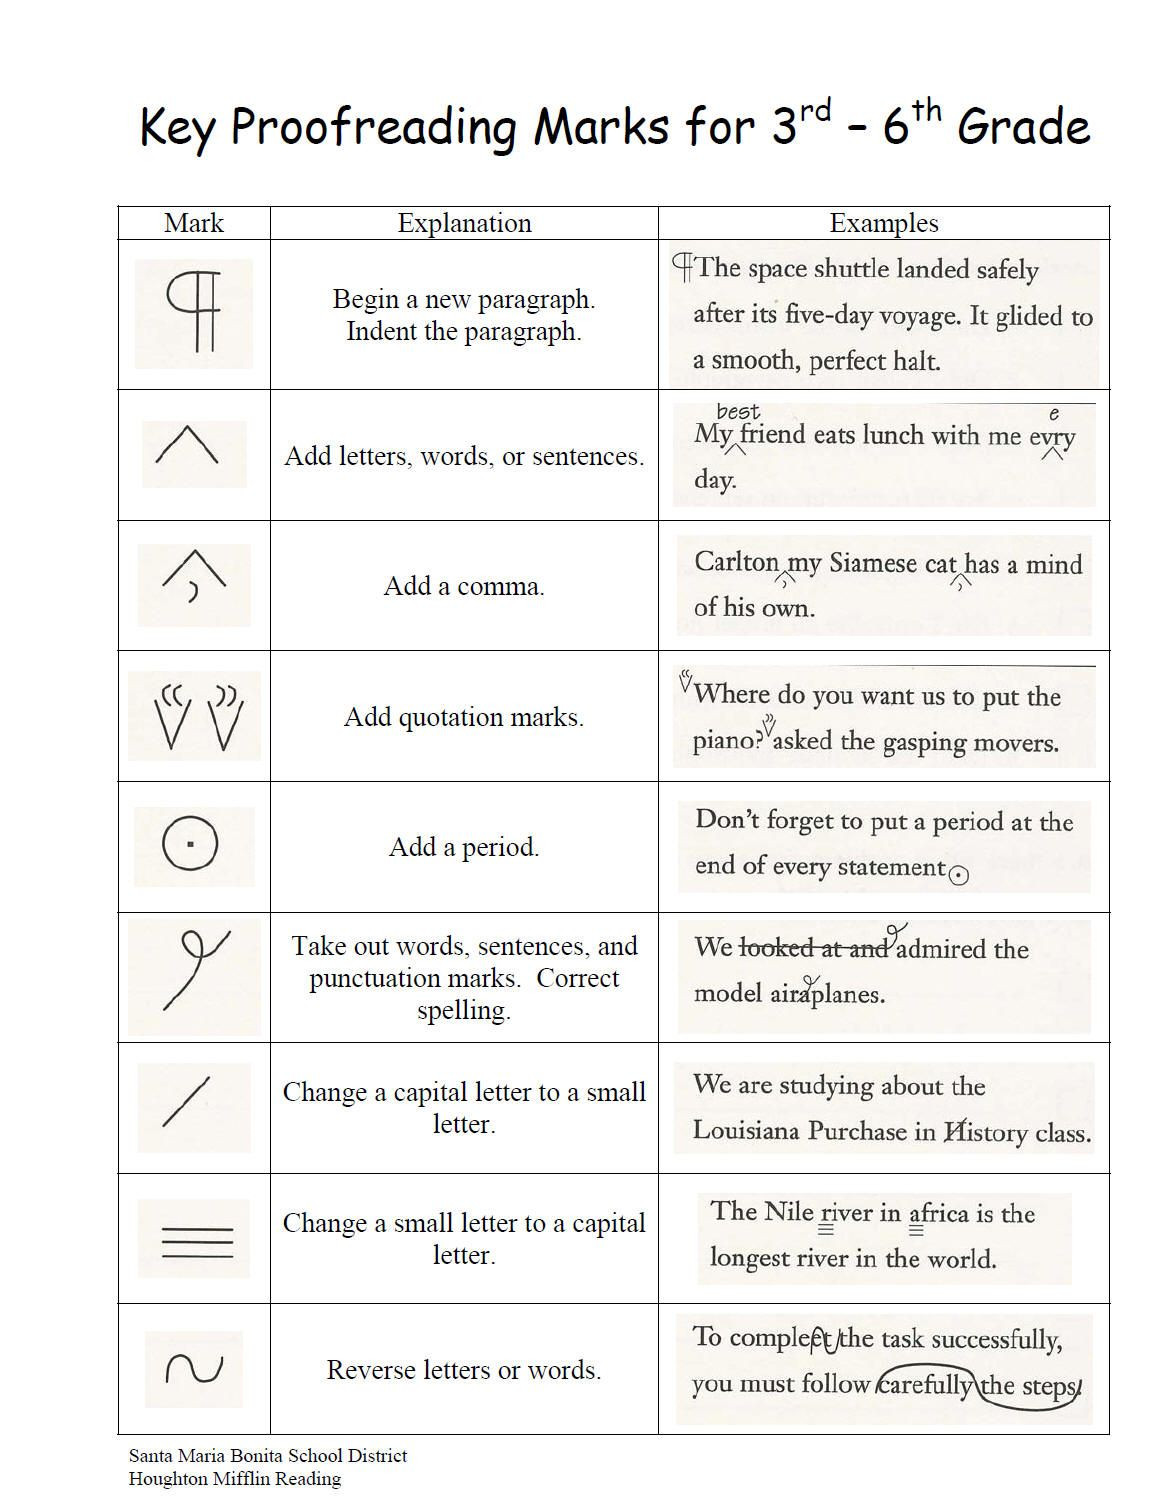 Proofreading Worksheets 3rd Grade 3rd Grade Proofreading Marks